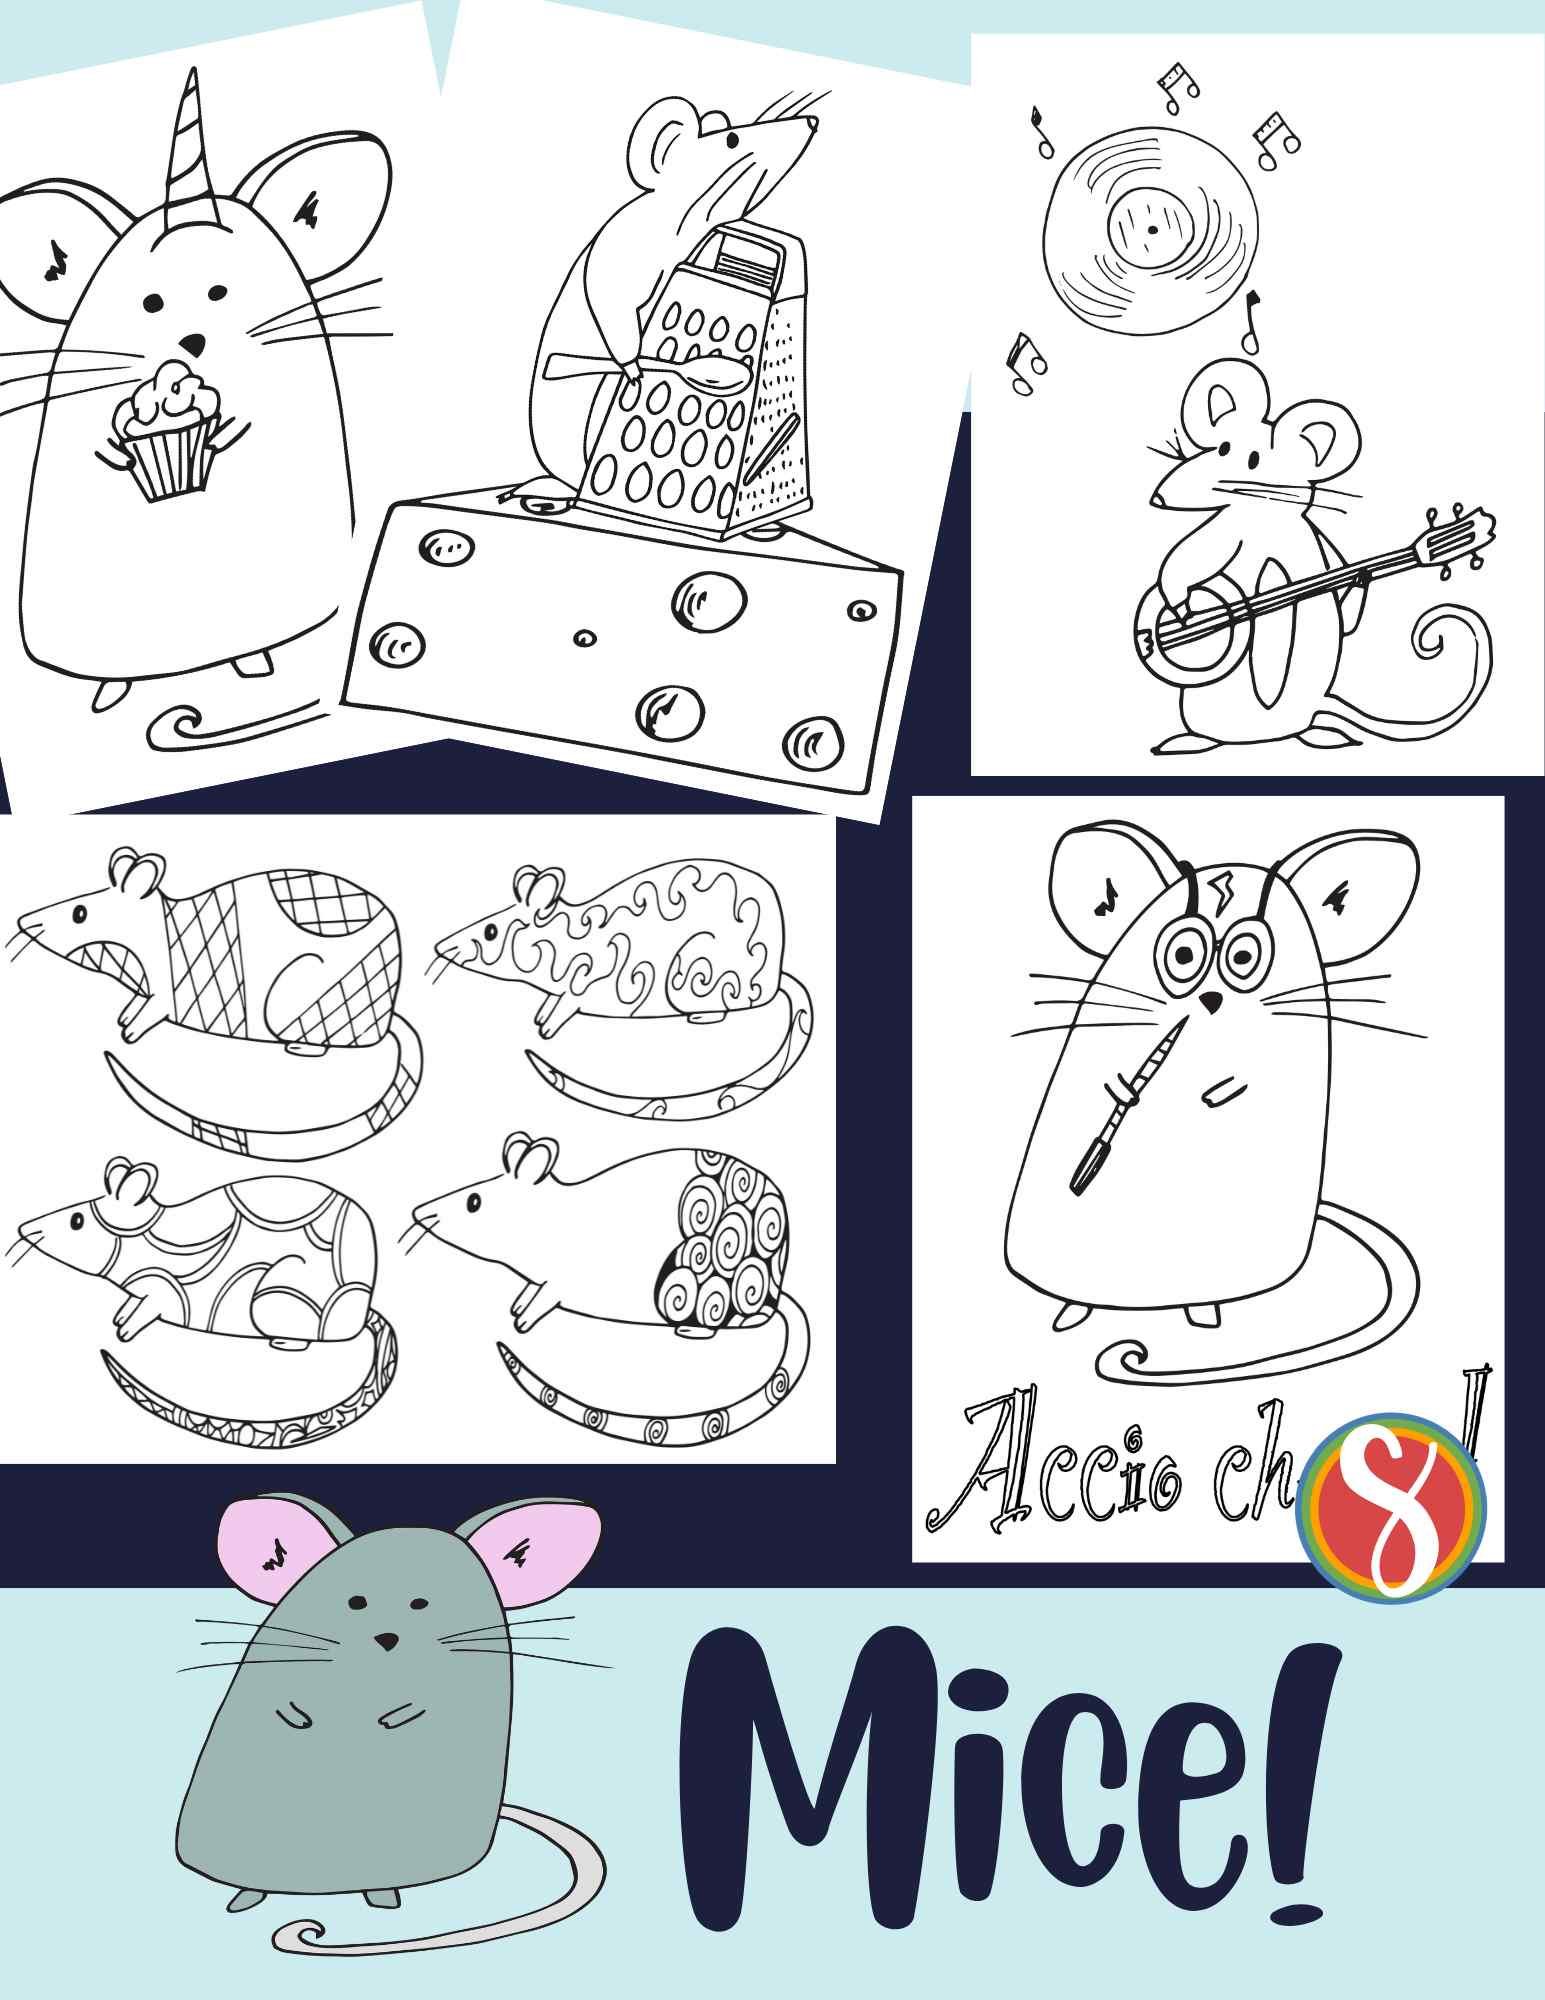 Free mouse coloring pages â stevie doodles